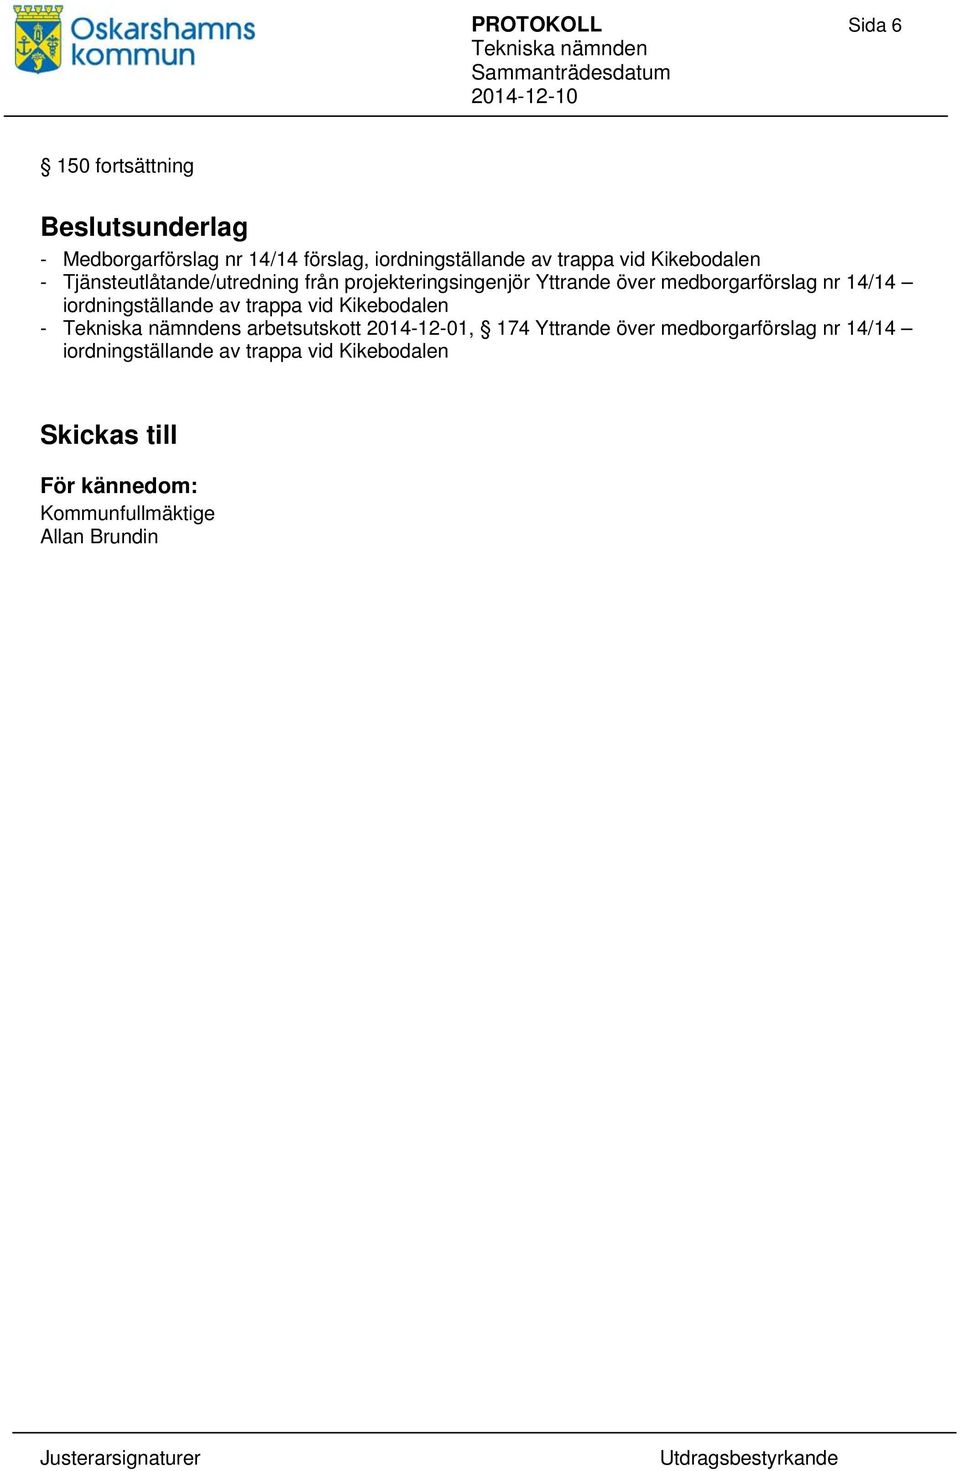 nr 14/14 iordningställande av trappa vid Kikebodalen - s arbetsutskott 2014-12-01, 174 Yttrande över